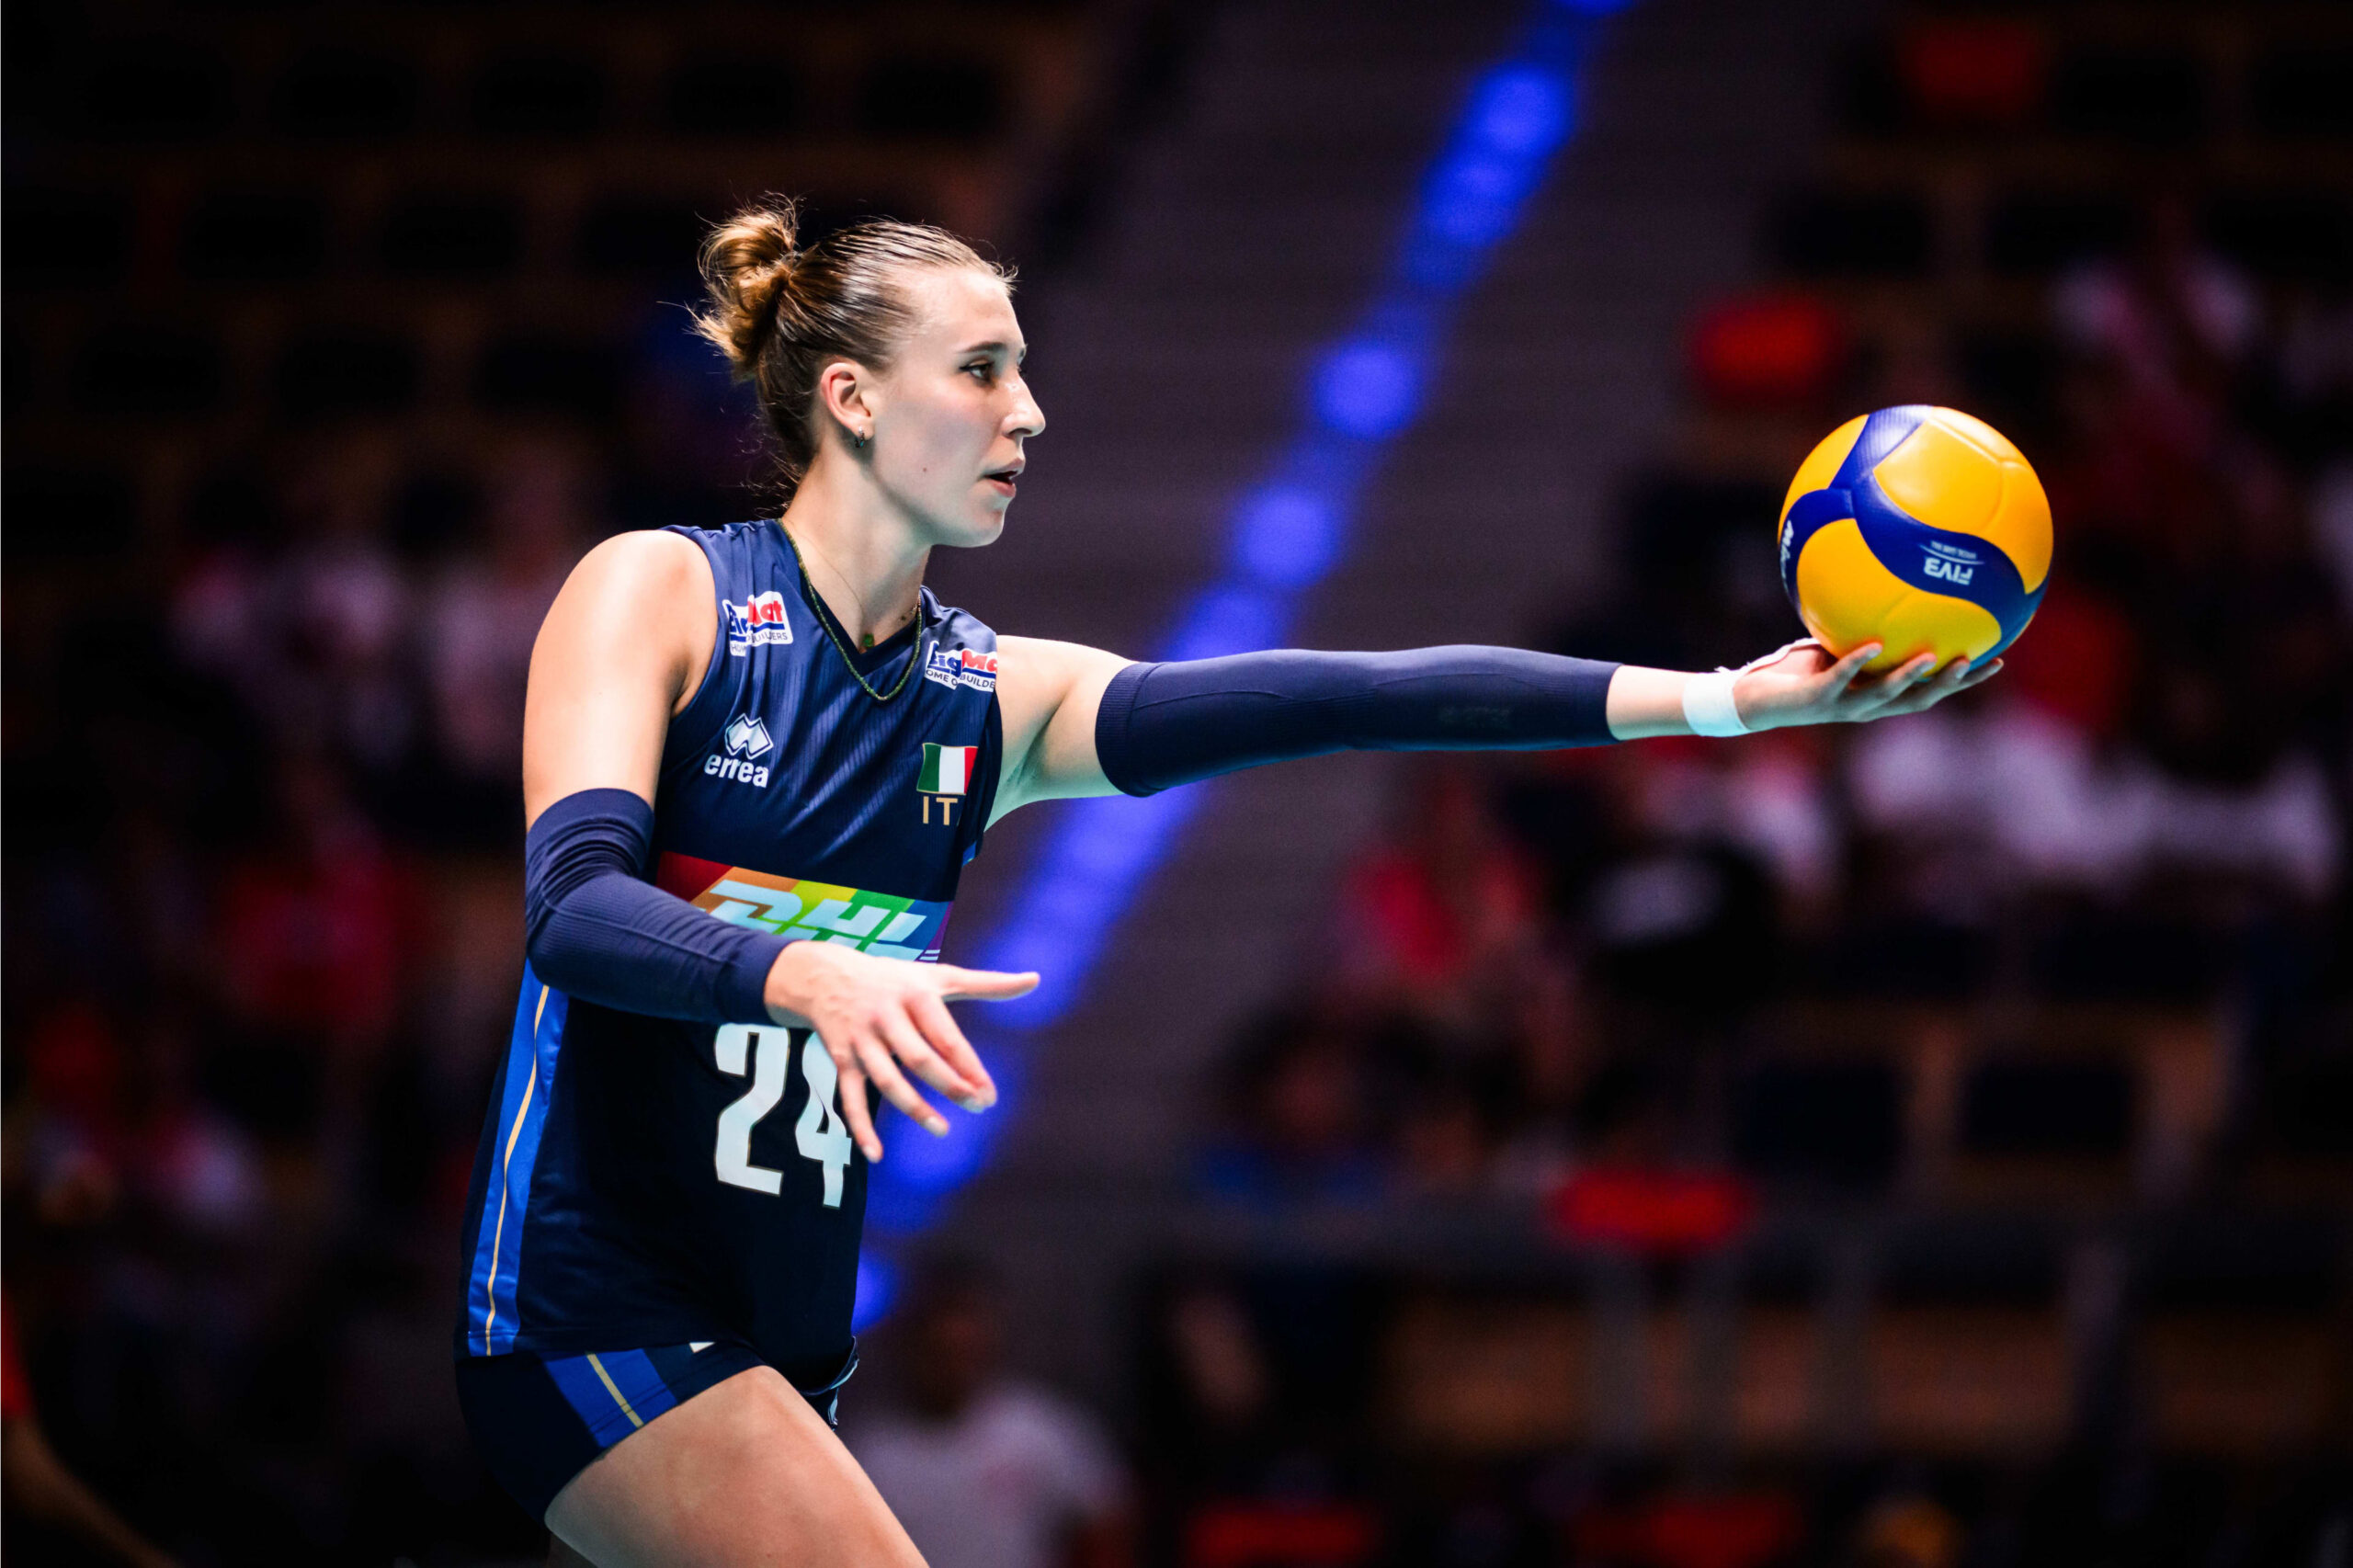 Pagelle Italia USA 1 3 volley femminile: serataccia per Pietrini, piace Villani, Danesi anonima